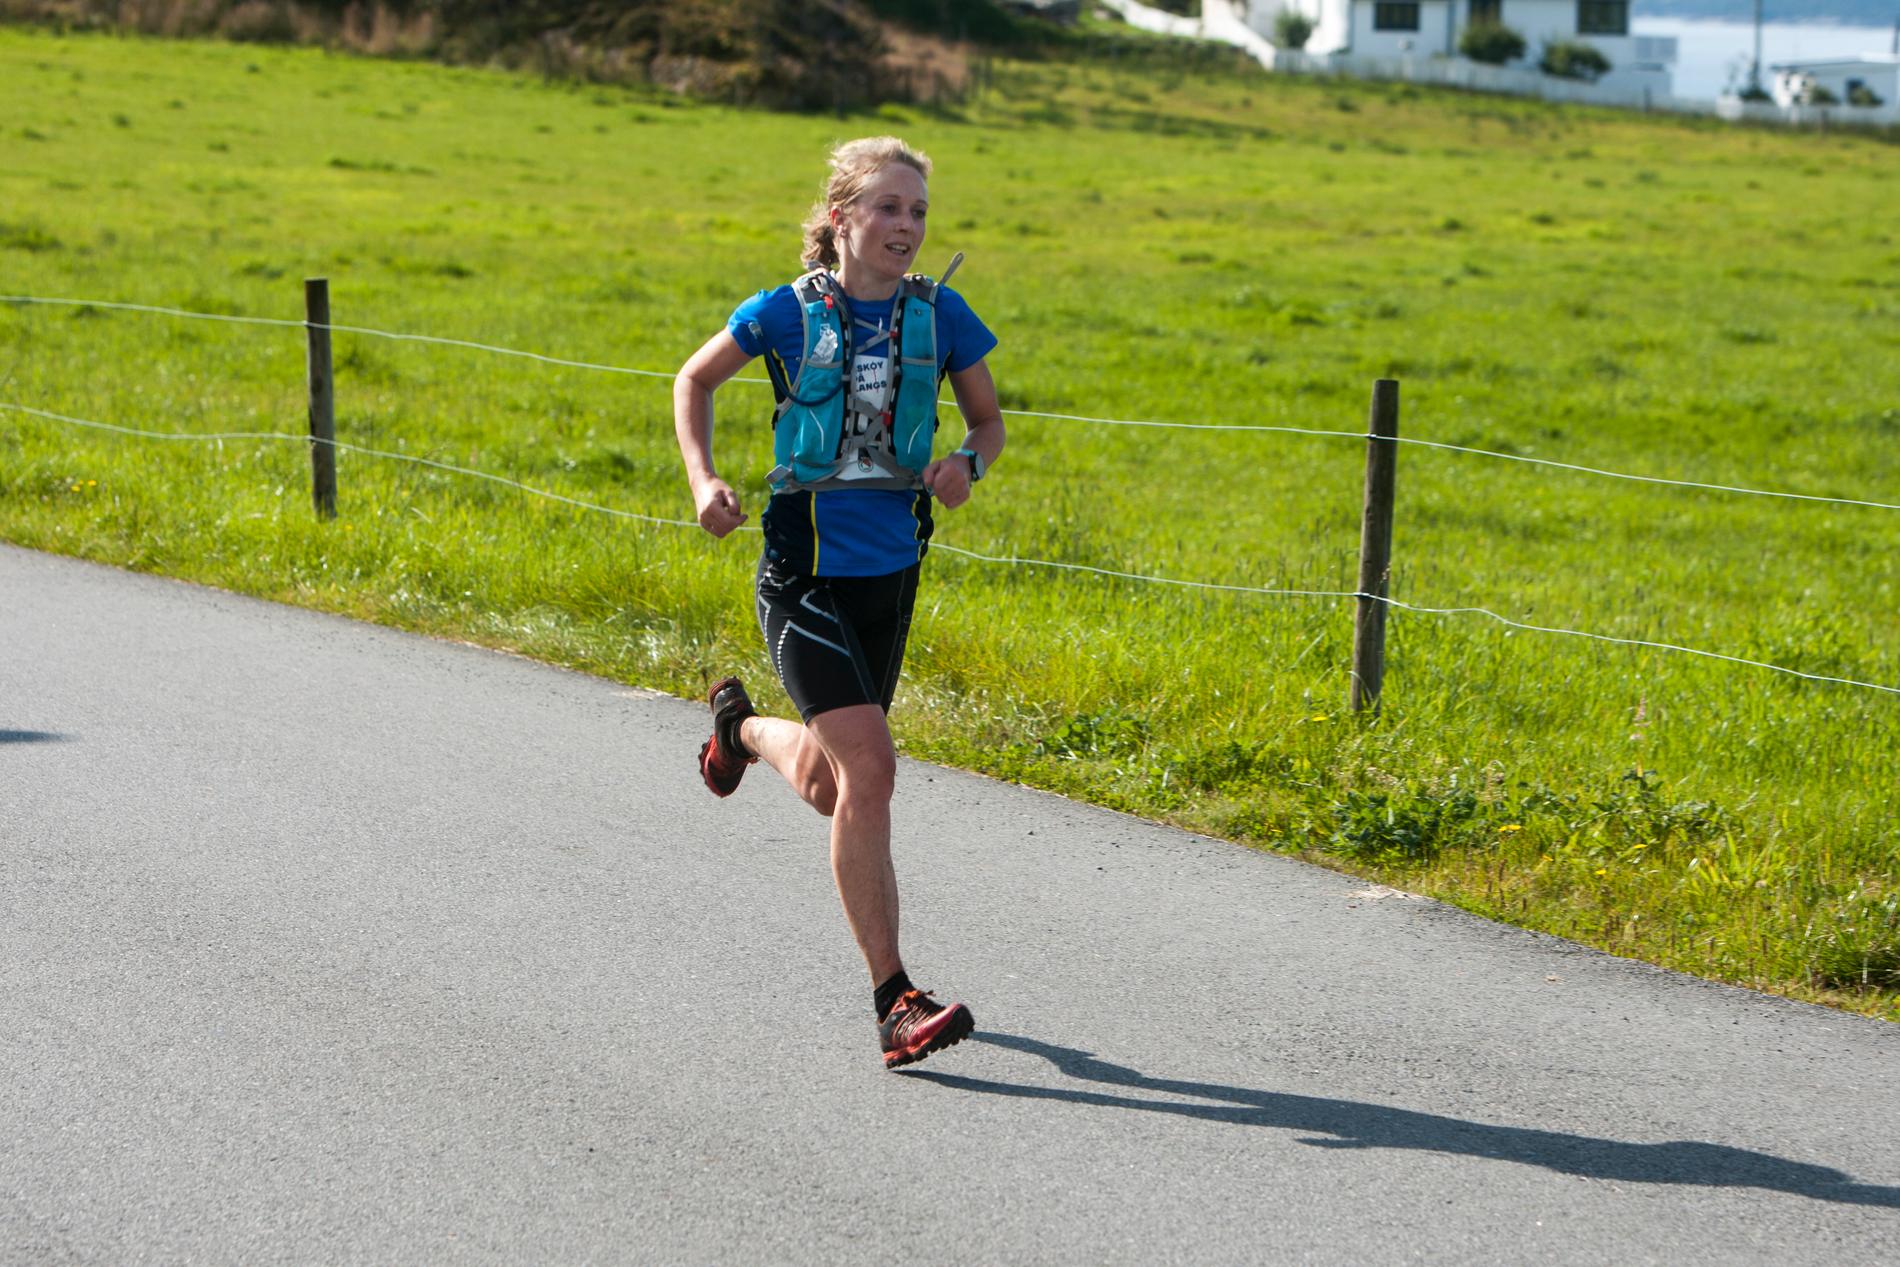  Sara-Rebekka Færø Linde med ny damerekord.